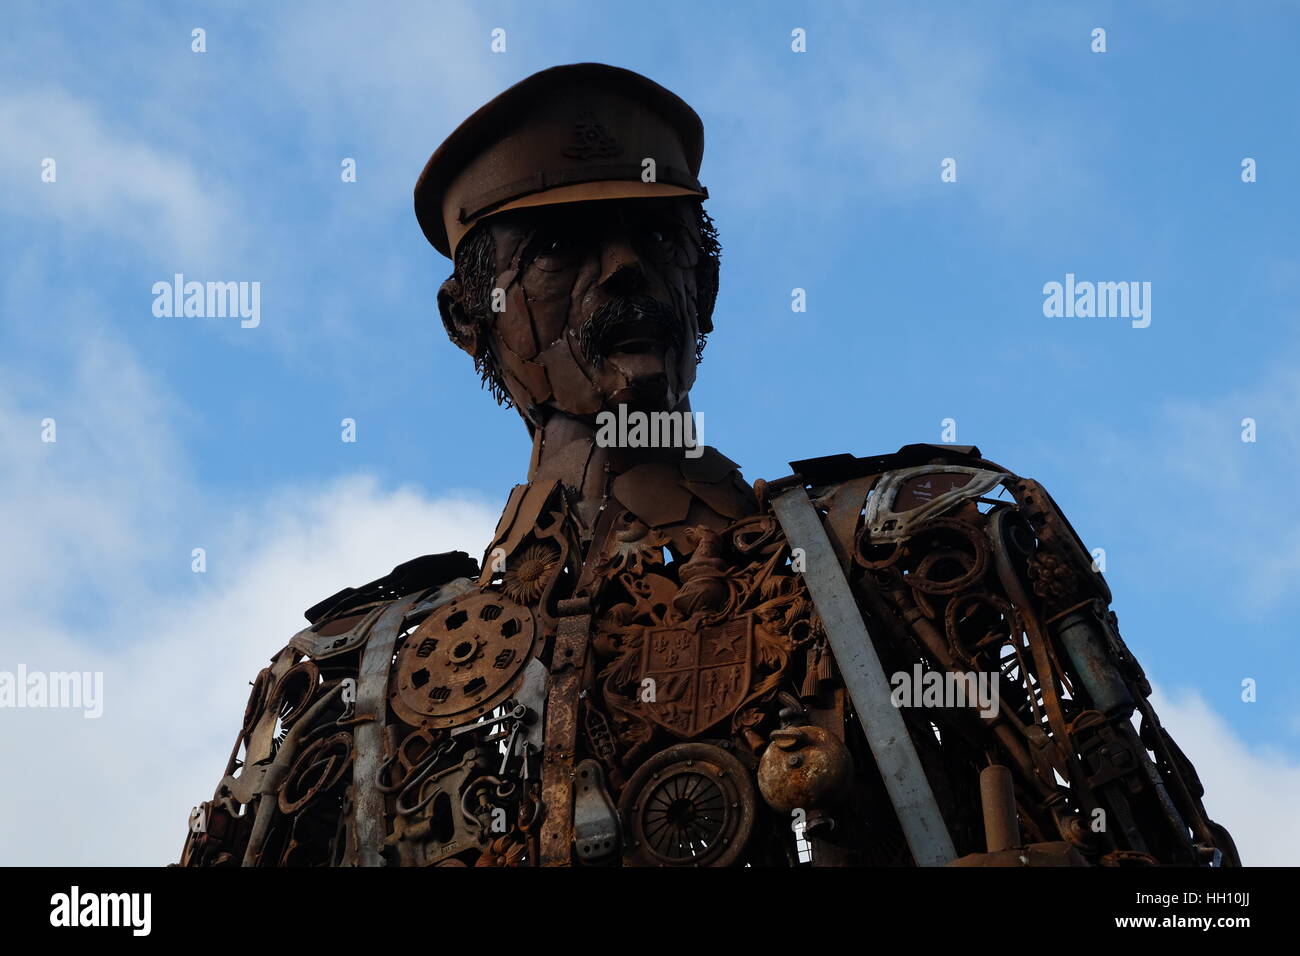 Soldat de métal, la hantise par Martin Galbavy, Dorset, Angleterre. Une sculpture faite à partir de ferraille. Banque D'Images